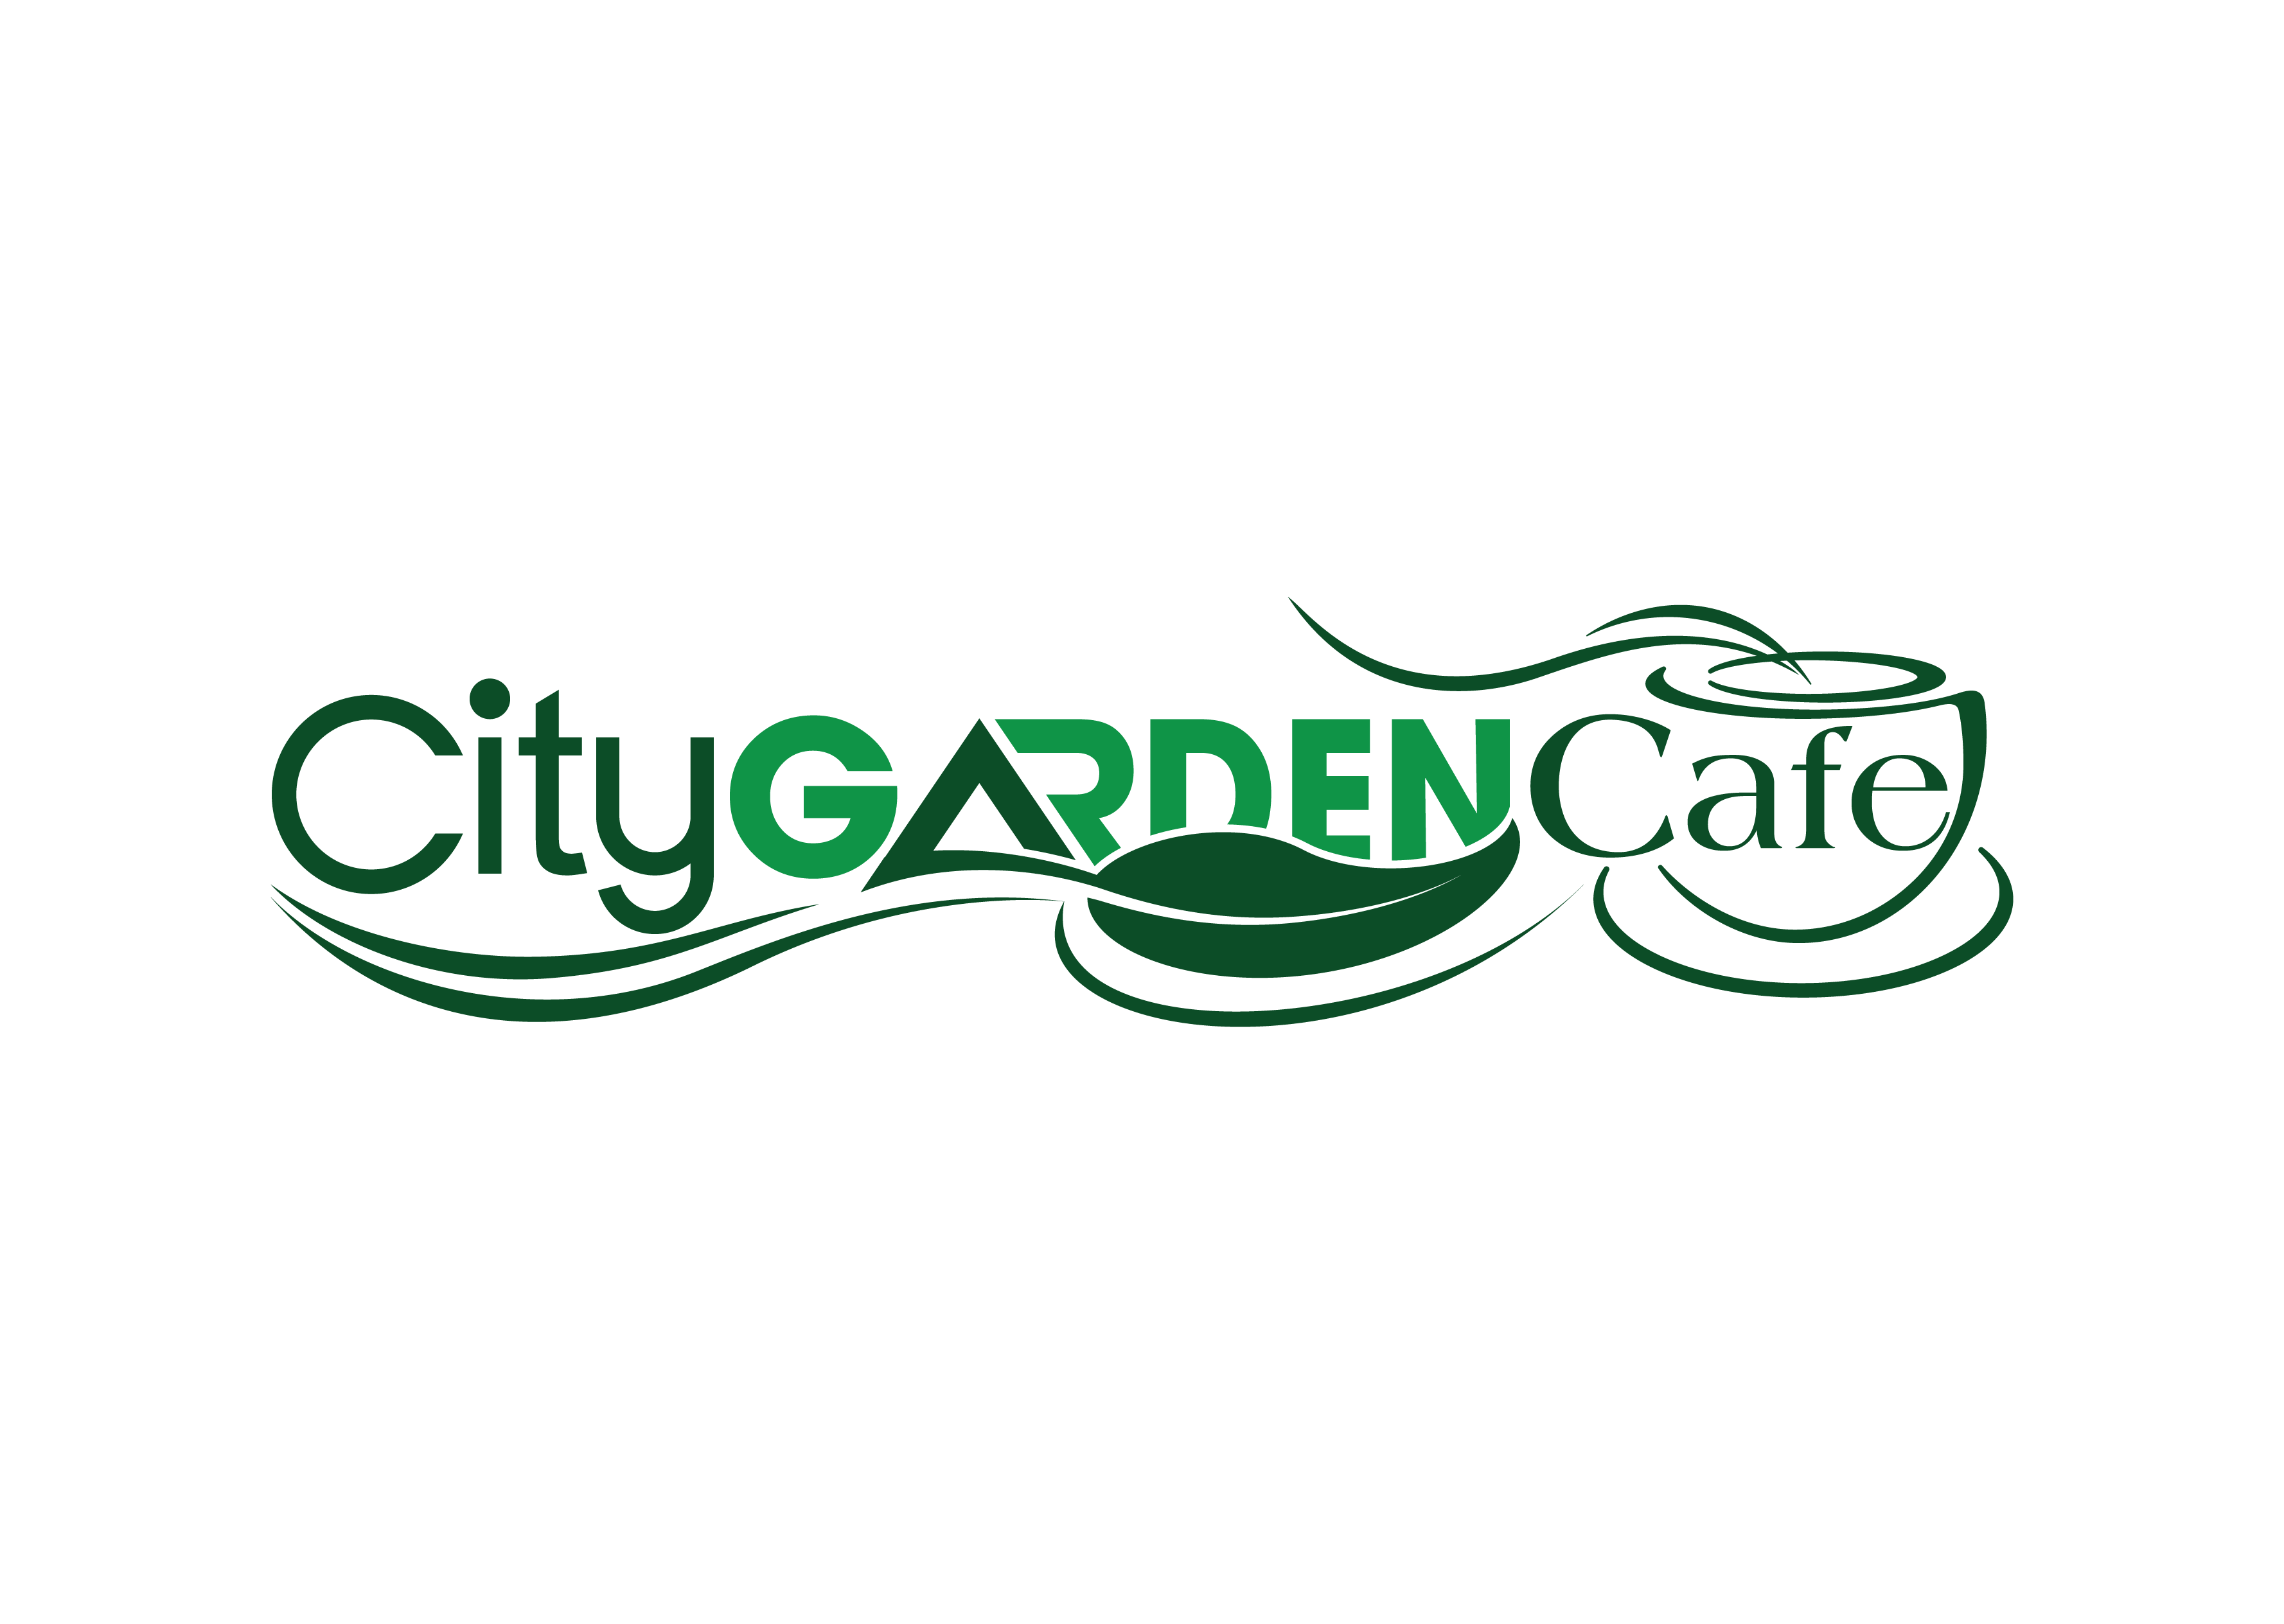 City Garden Cafe Tuyển Dụng 15590 Hoteljob Vn